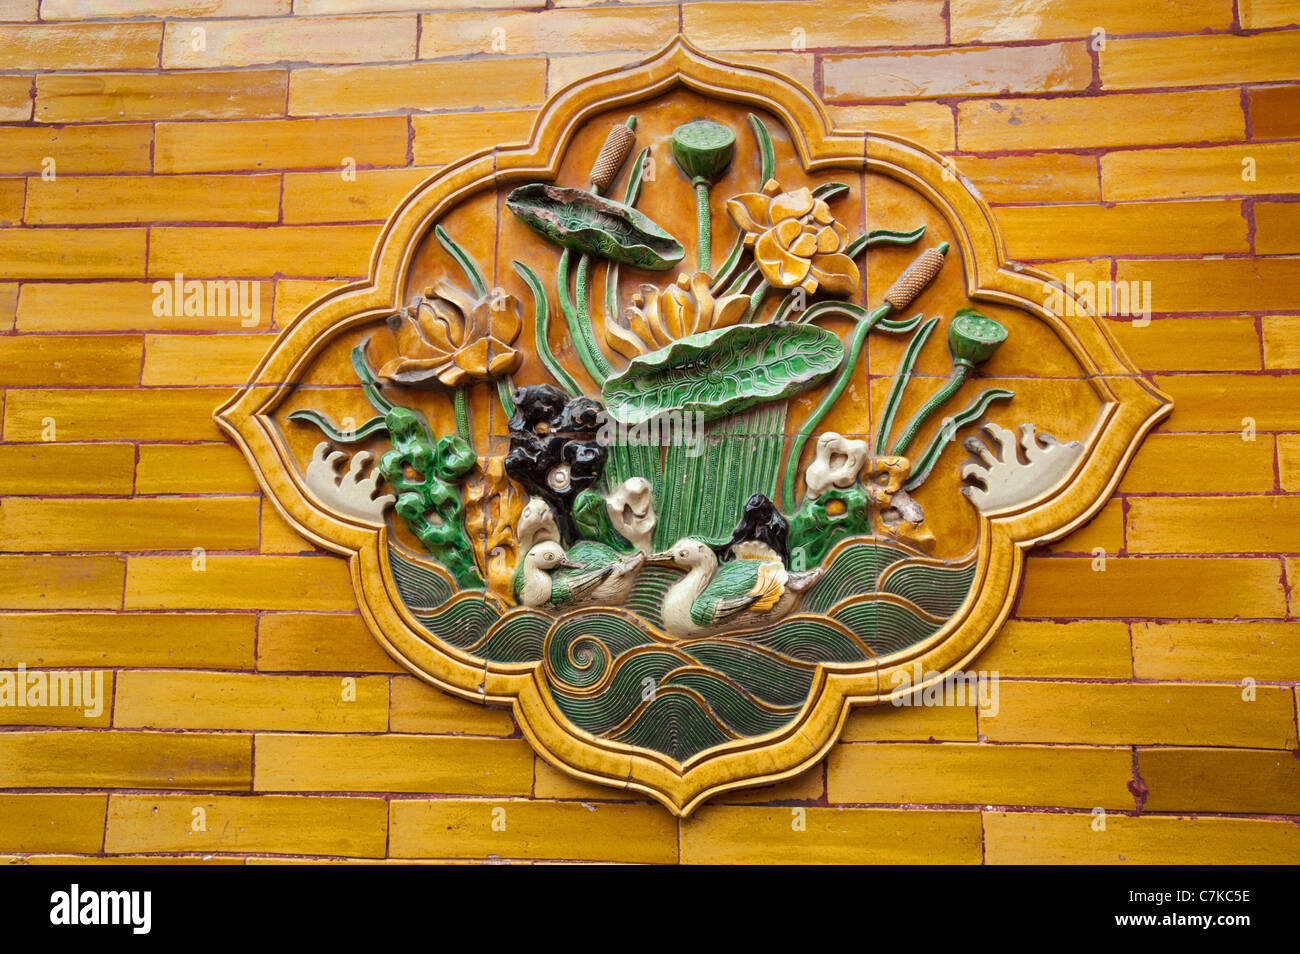 La cité Interdite de Pékin Chine Pékin palais royal à l'intérieur de ville urne en bronze détail dans la cour de la salle de l'harmonie suprême Banque D'Images